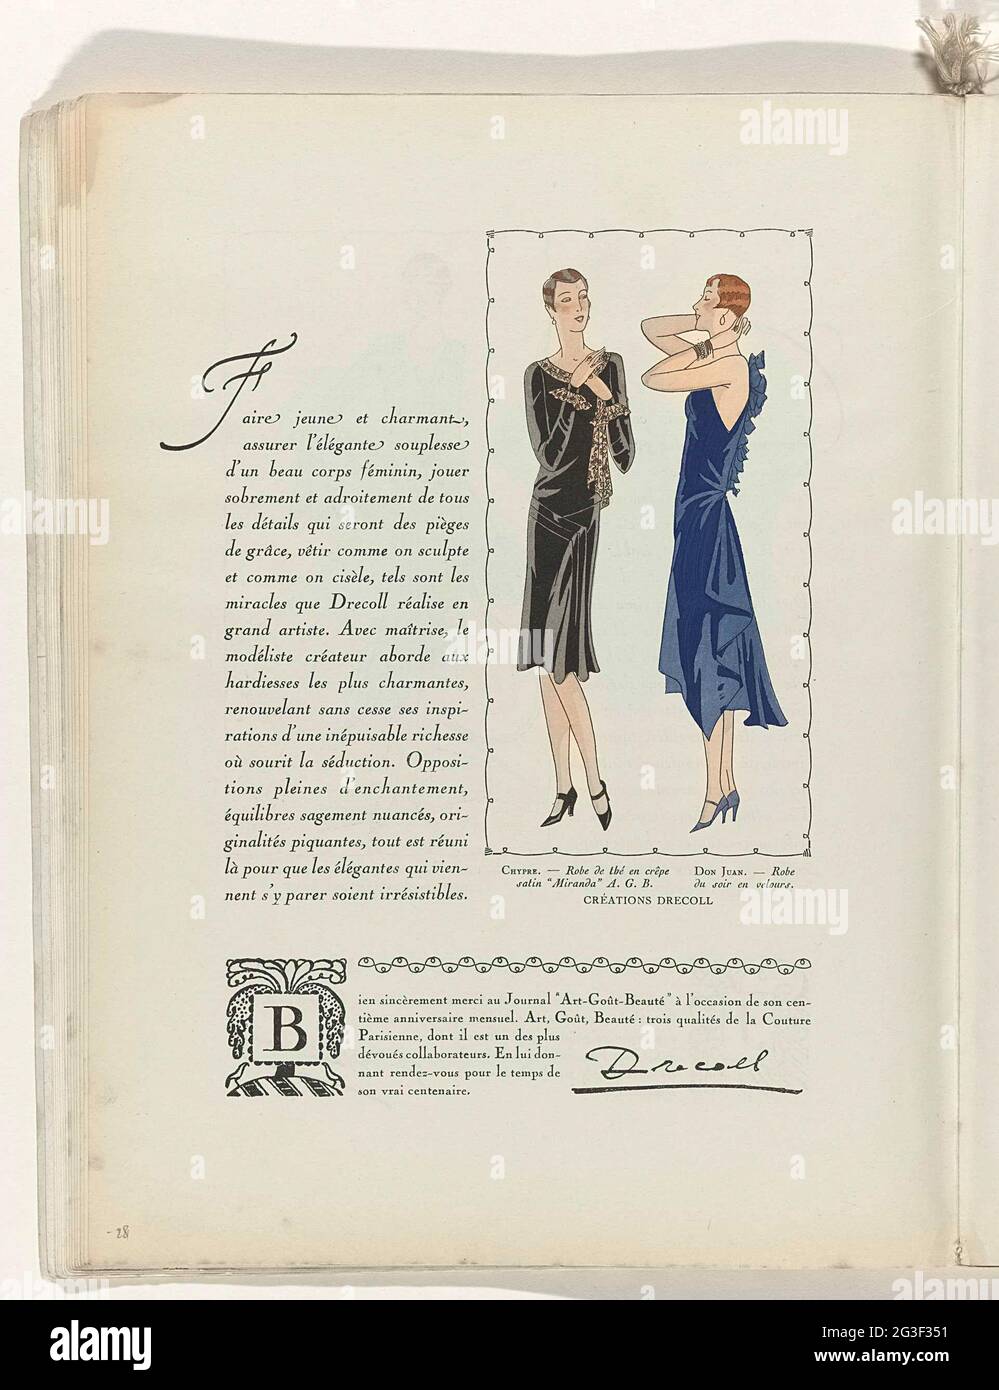 Art - Goût - Beauté, Feuillets de l'élégance Féminine, Noël 1928, no 100,  9e année, p. 28. Texte avec une image de robes DreColl. À gauche: 'Robe de  Thé' (Tea Gown) de '